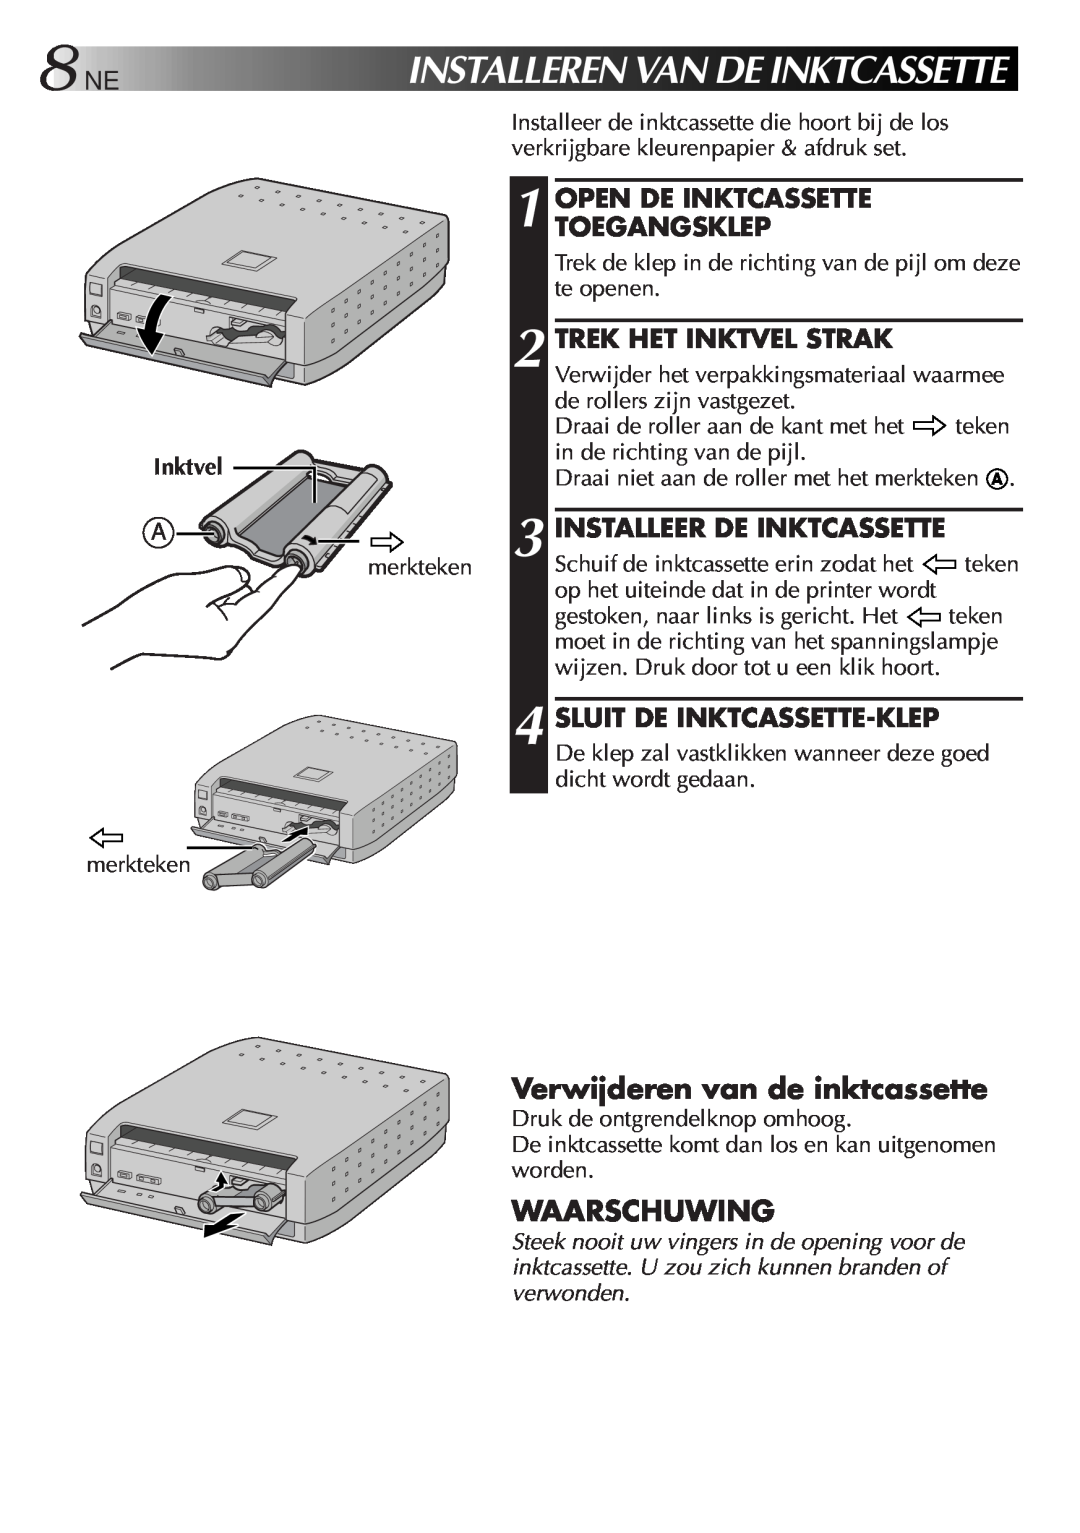 JVC GV-SP2 Installerenvandeinktcassette, Verwijderen van de inktcassette, Waarschuwing, Open De Inktcassette Toegangsklep 